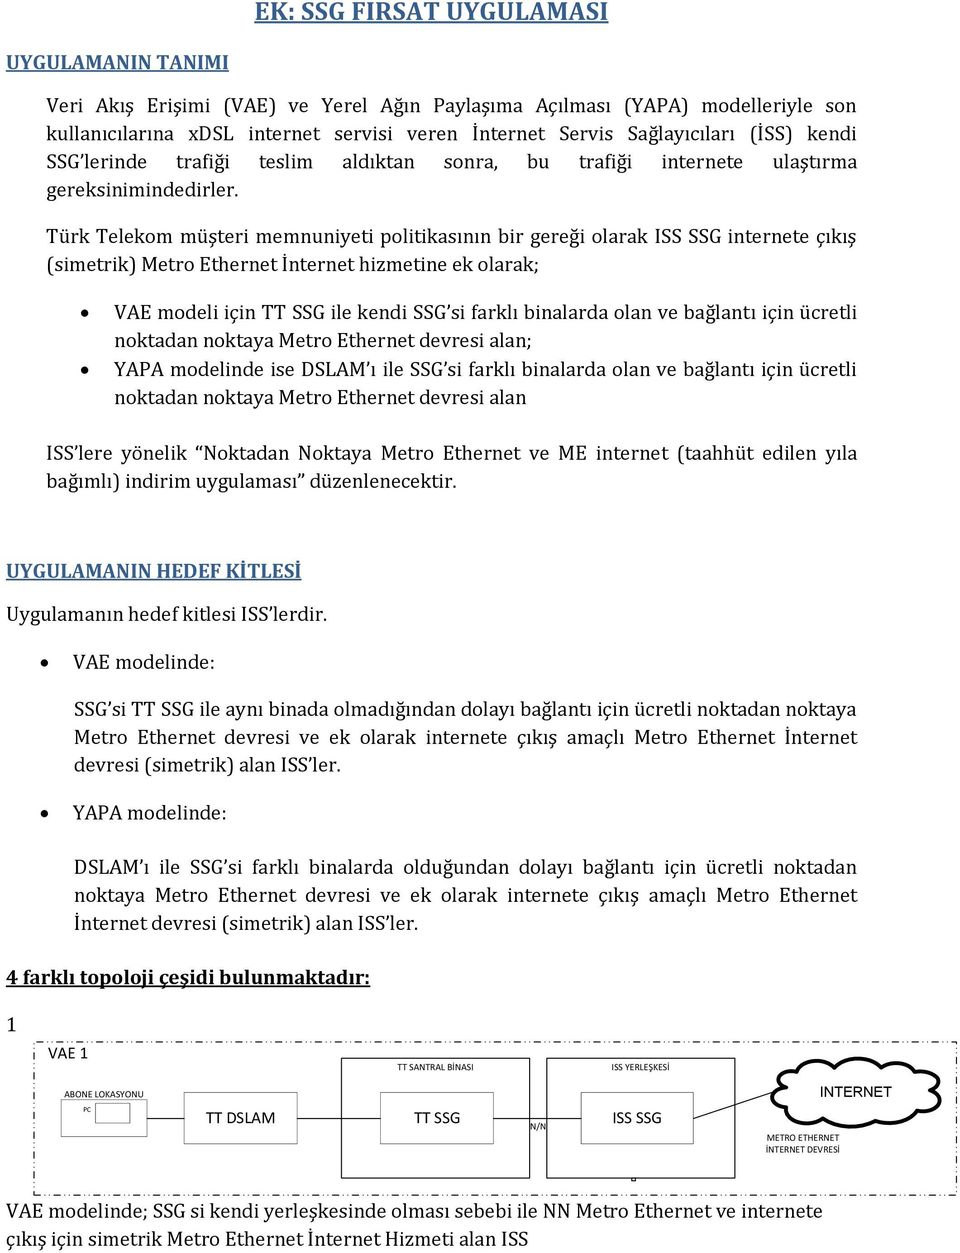 Türk Telekom müşteri memnuniyeti politikasının bir gereği olarak internete çıkış (simetrik) Metro Ethernet İnternet hizmetine ek olarak; VAE modeli için TT SSG ile kendi SSG si farklı binalarda olan